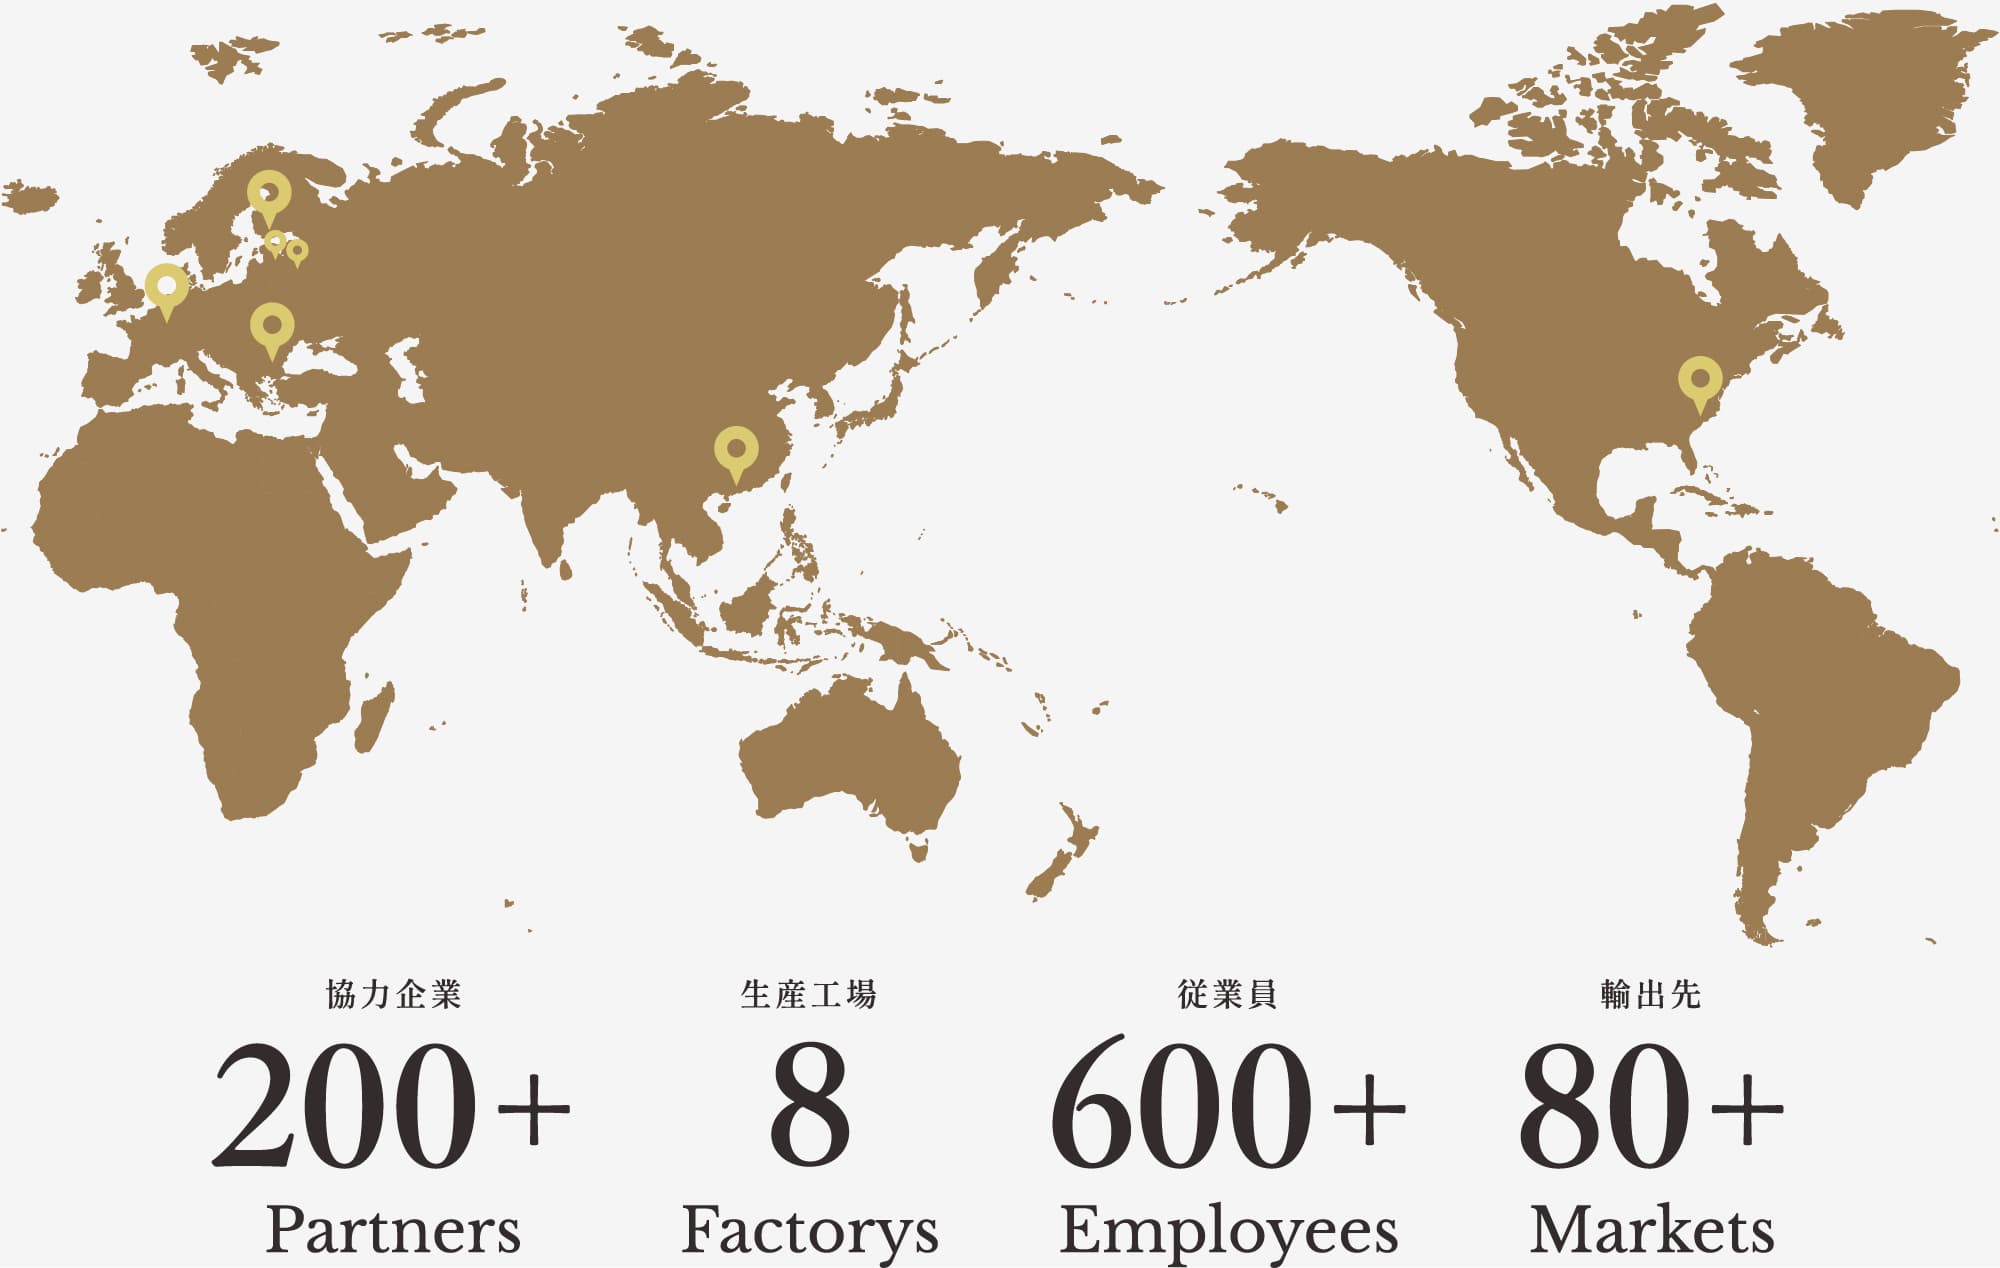 協力企業 Partners 200+ 生産工場 Factorys 7 従業員 Employees 600+ 店舗 Markets 80+